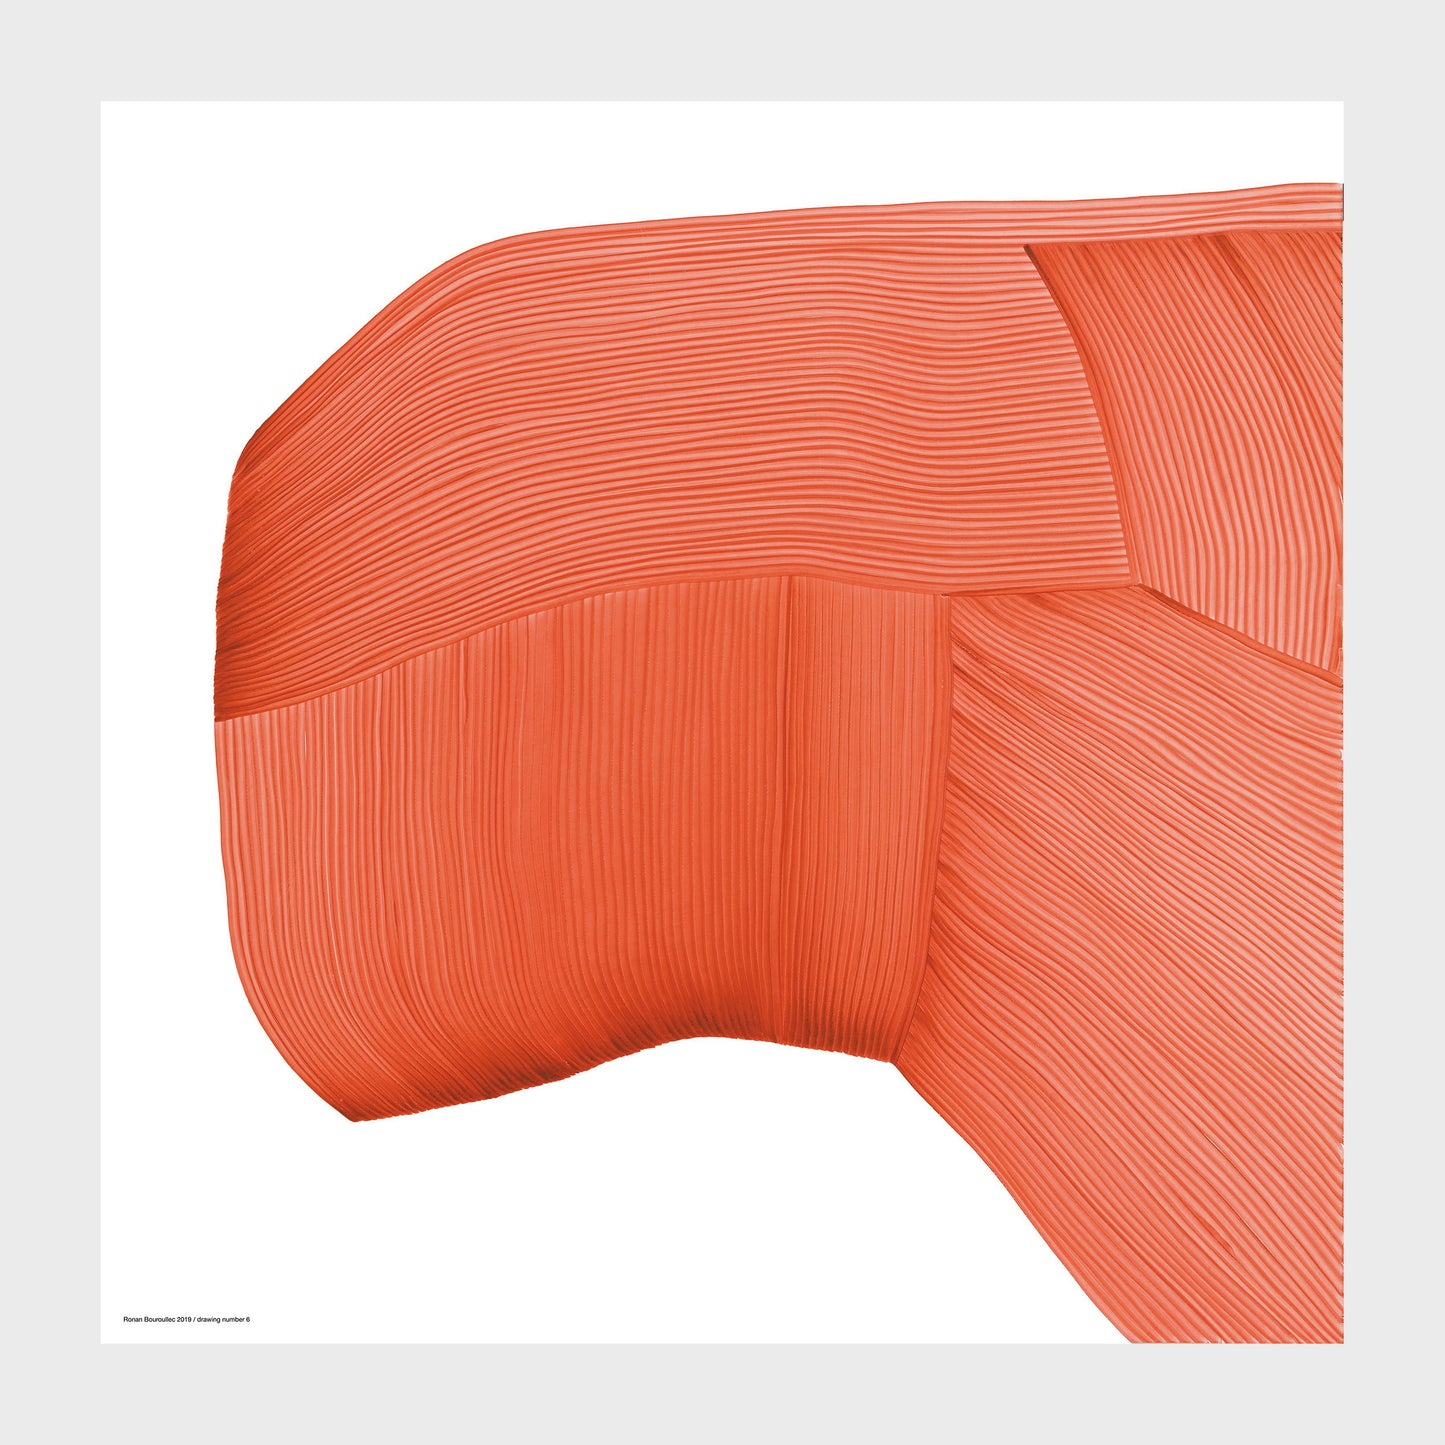 The Wrong Shop Drawing 6 – Ronan Bouroullec, 67.5x67.5cm